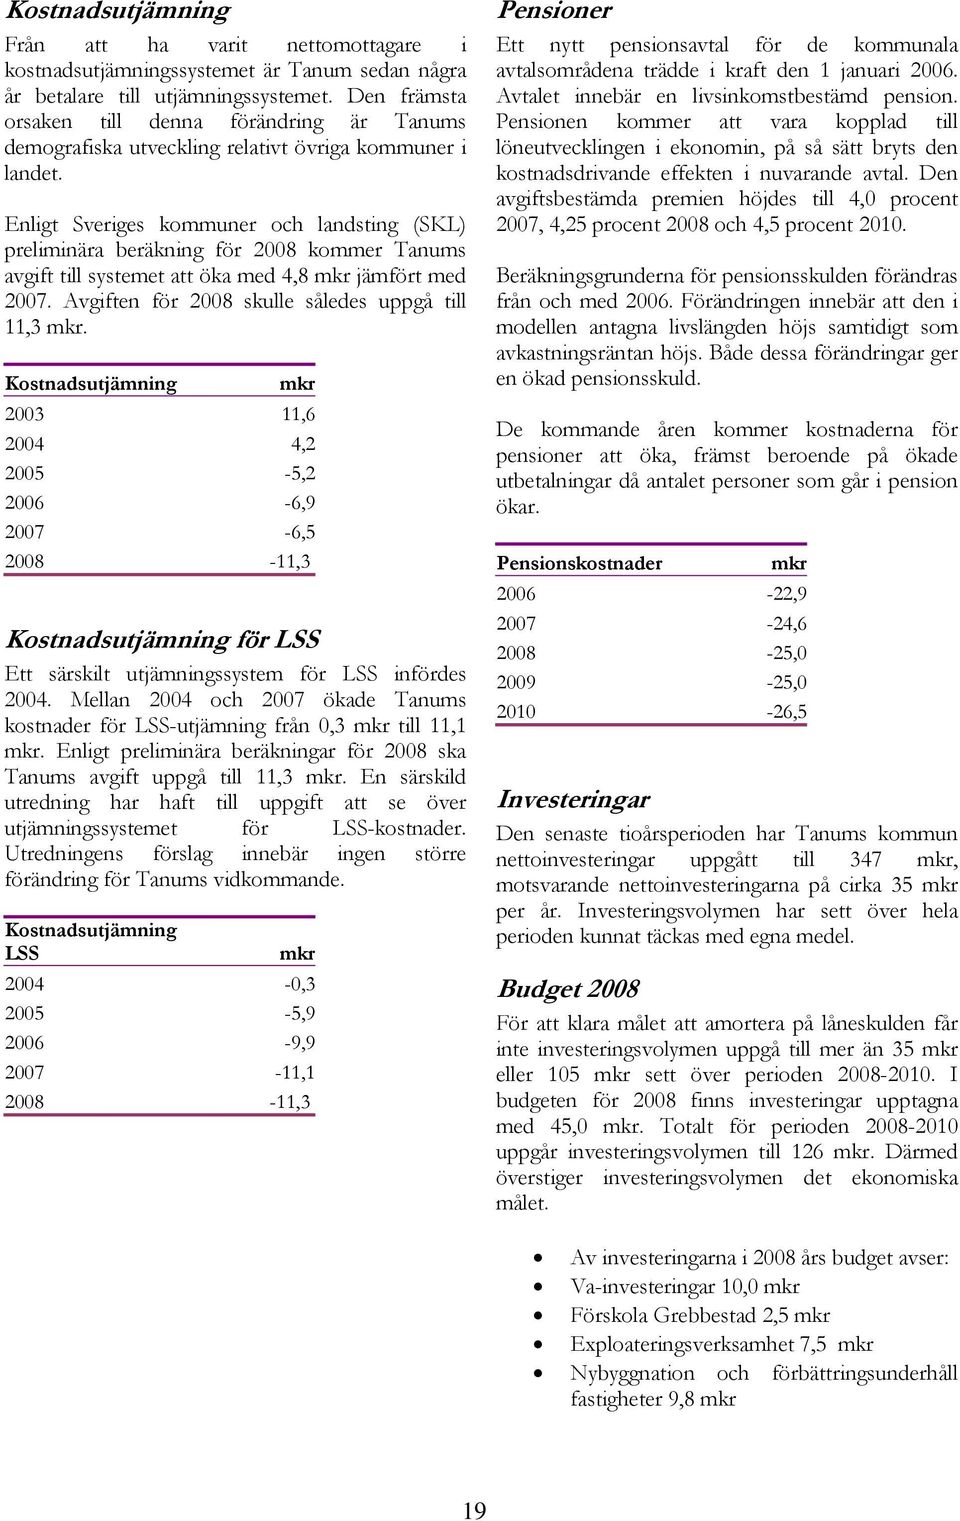 Enligt Sveriges kommuner och landsting (SKL) preliminära beräkning för 2008 kommer Tanums avgift till systemet att öka med 4,8 mkr jämfört med 2007.